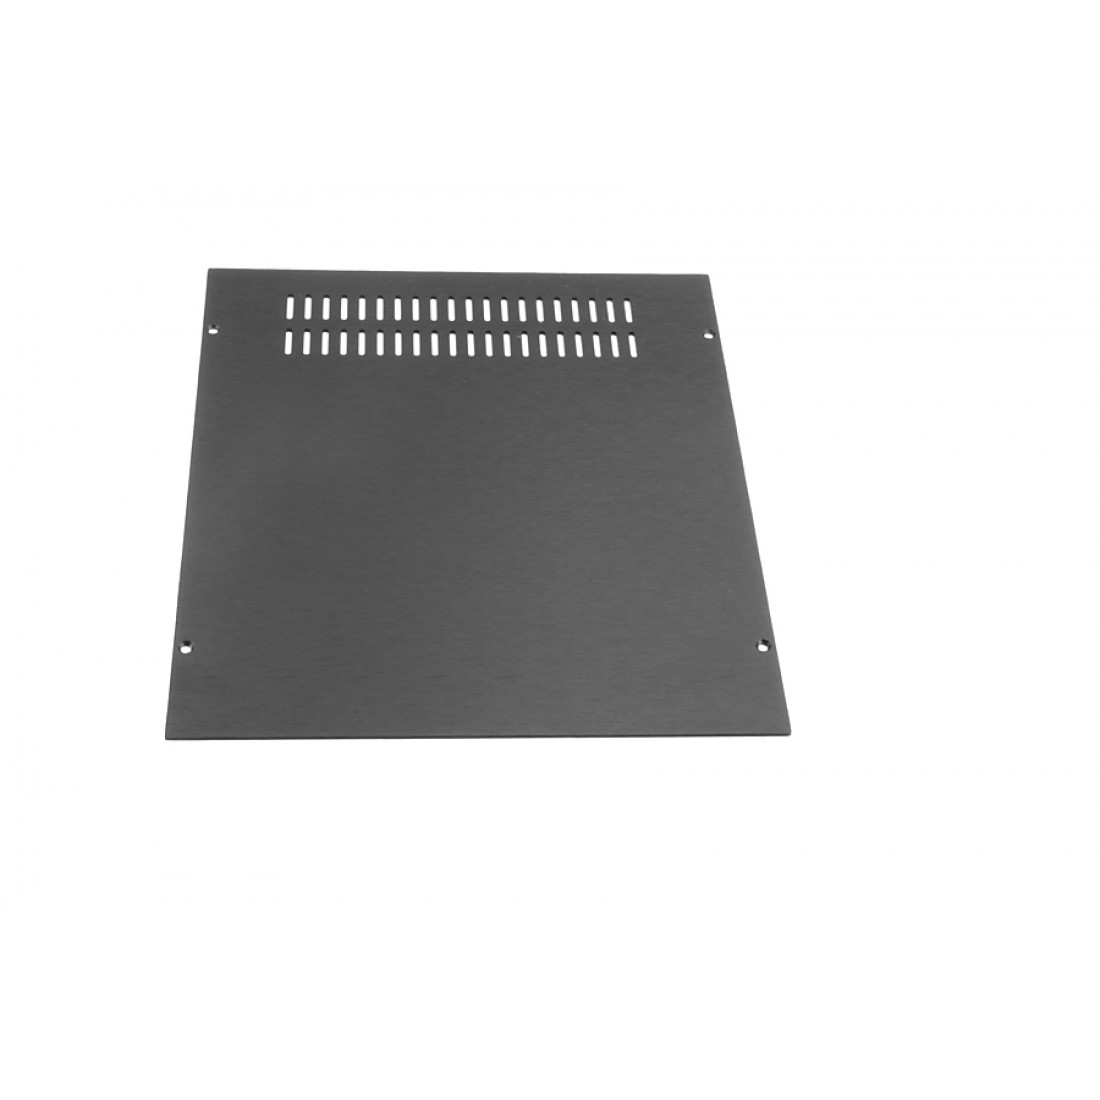 1NGXA248N - 1U Galaxy krabice, 230 x 280 x 40mm, 10mm panel černý